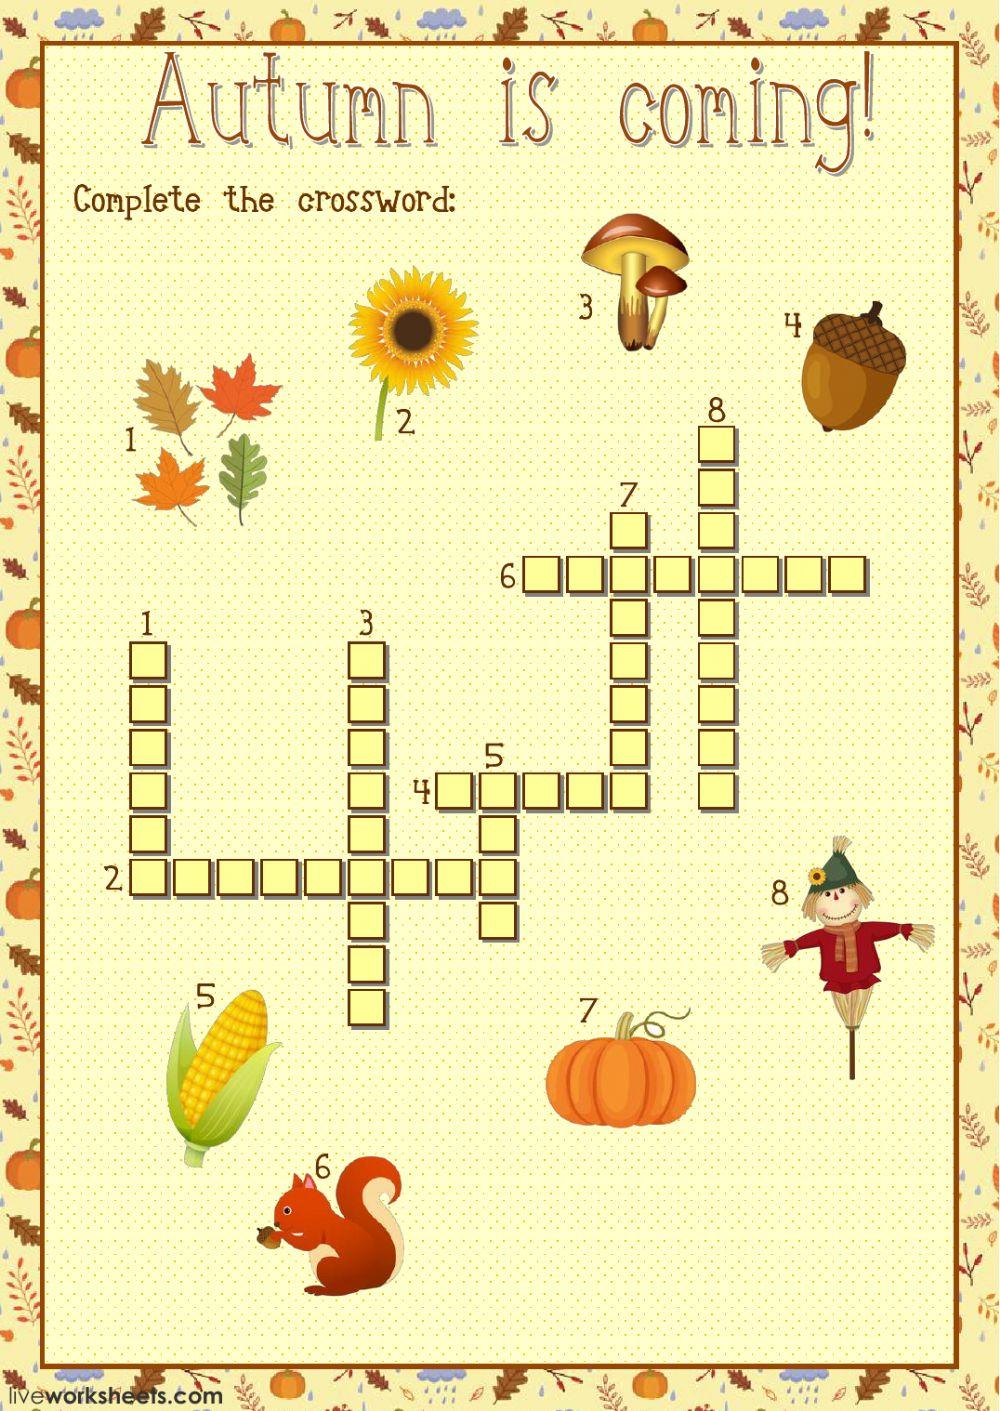 Autumn crossword